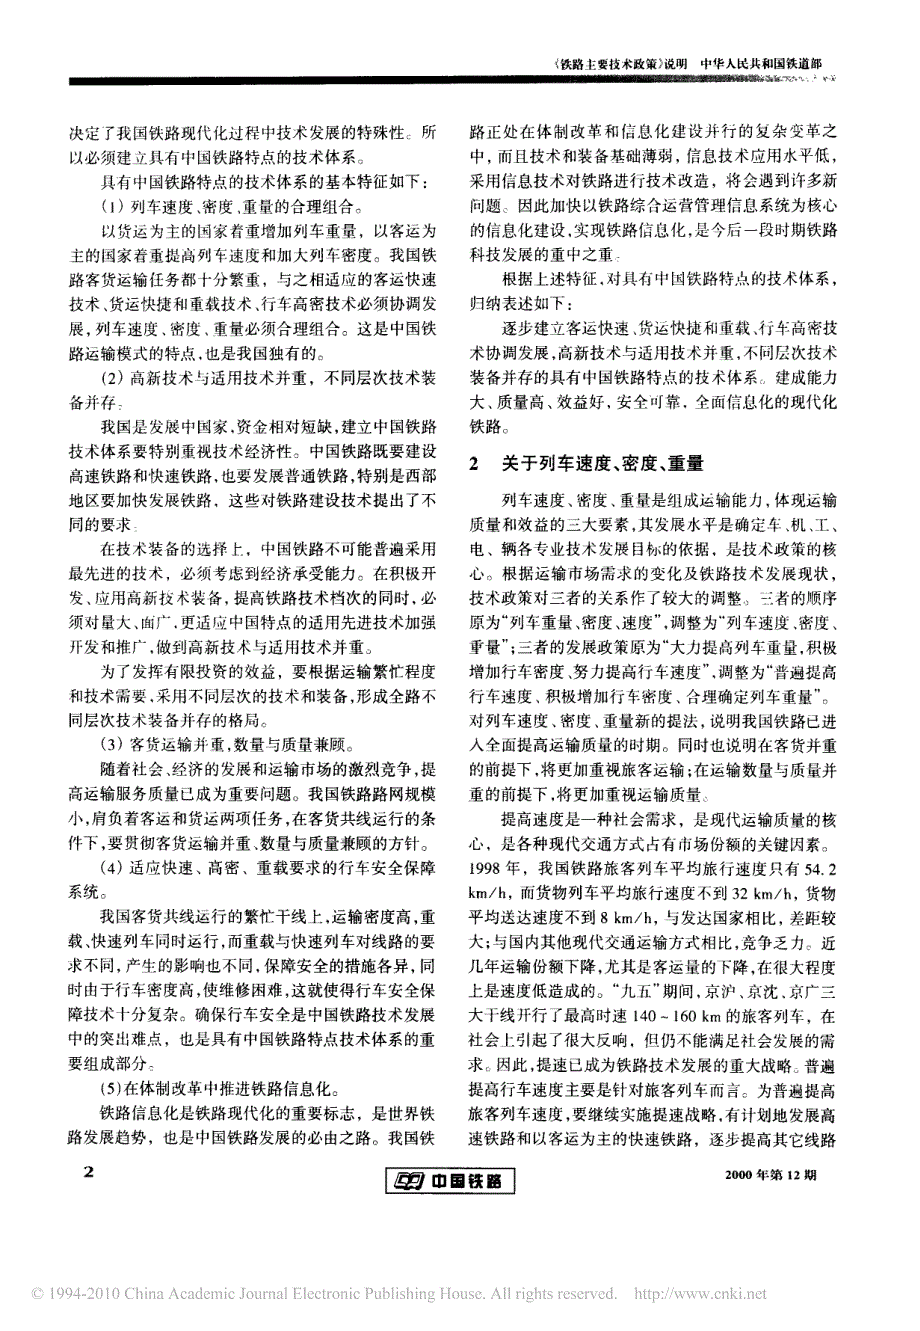 铁路主要技术政策_说明_第2页